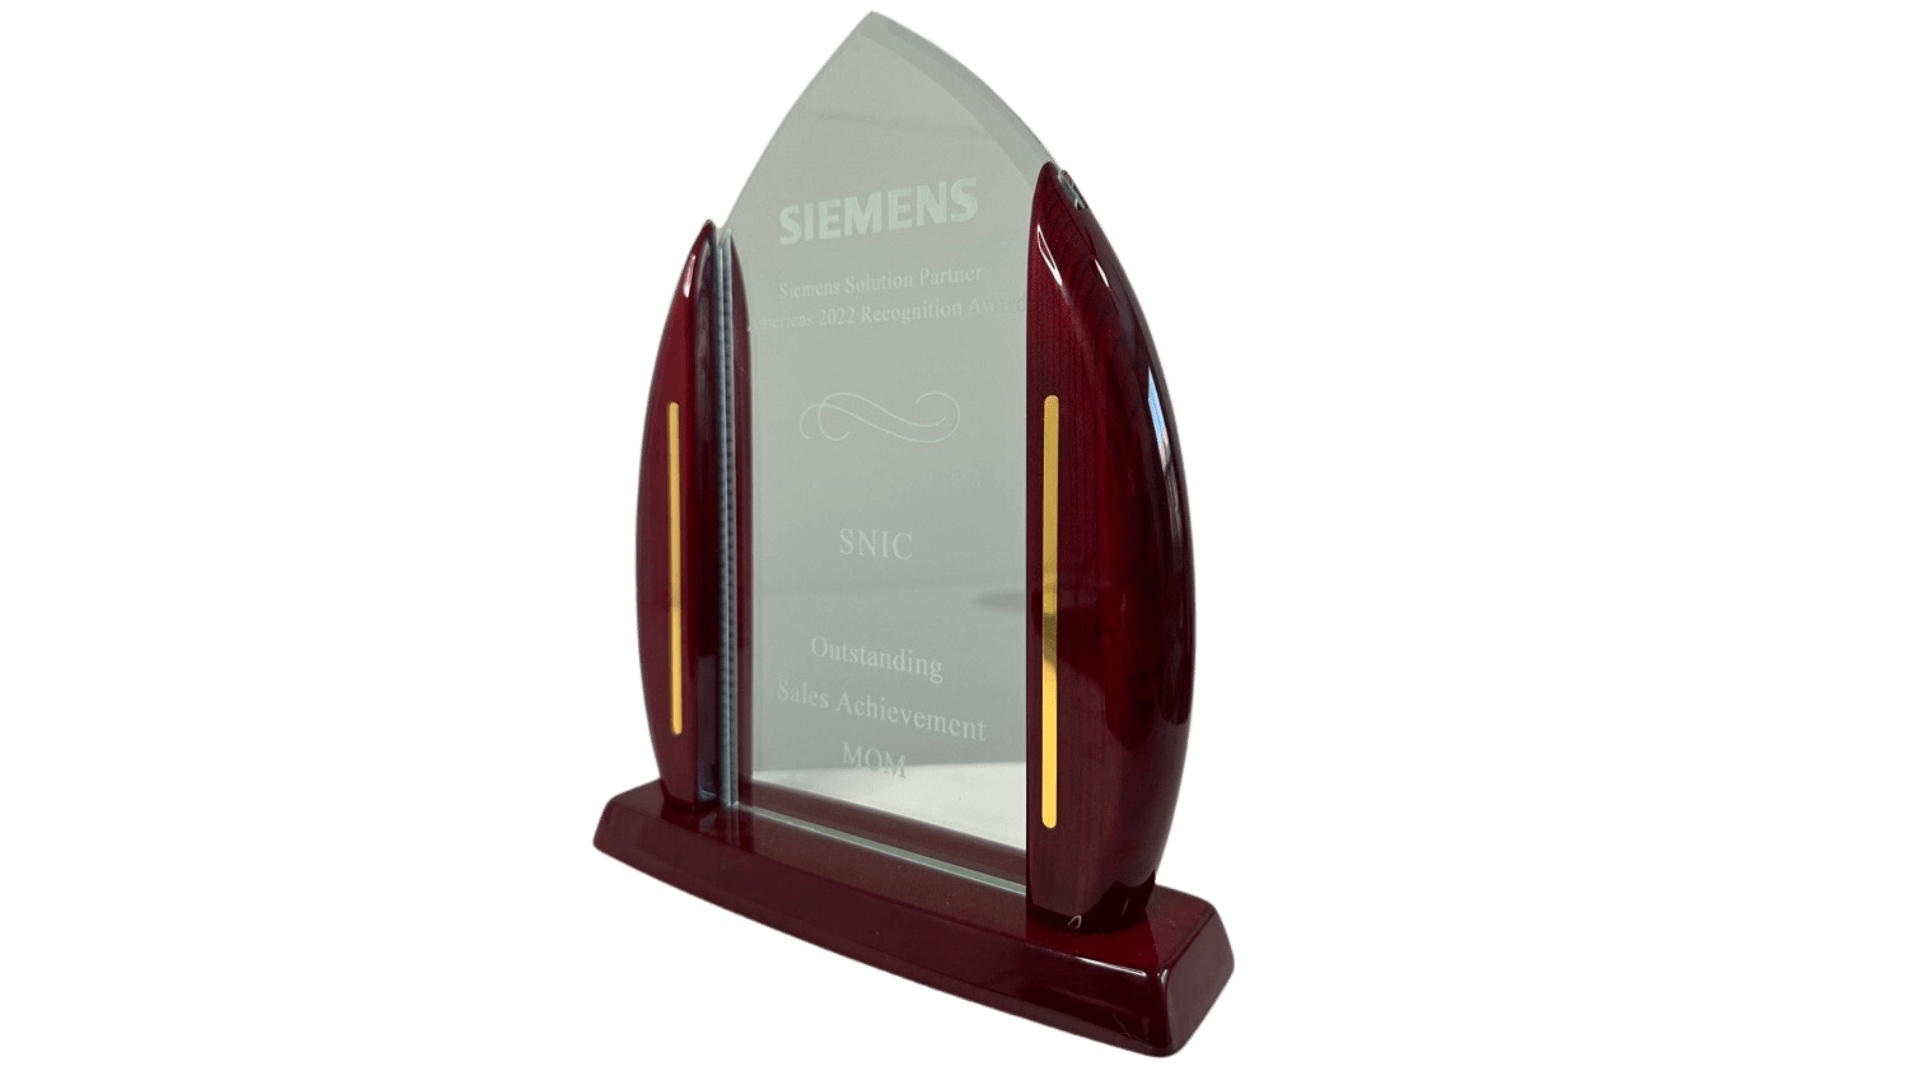 Siemens Opcenter MOM Partner Award.